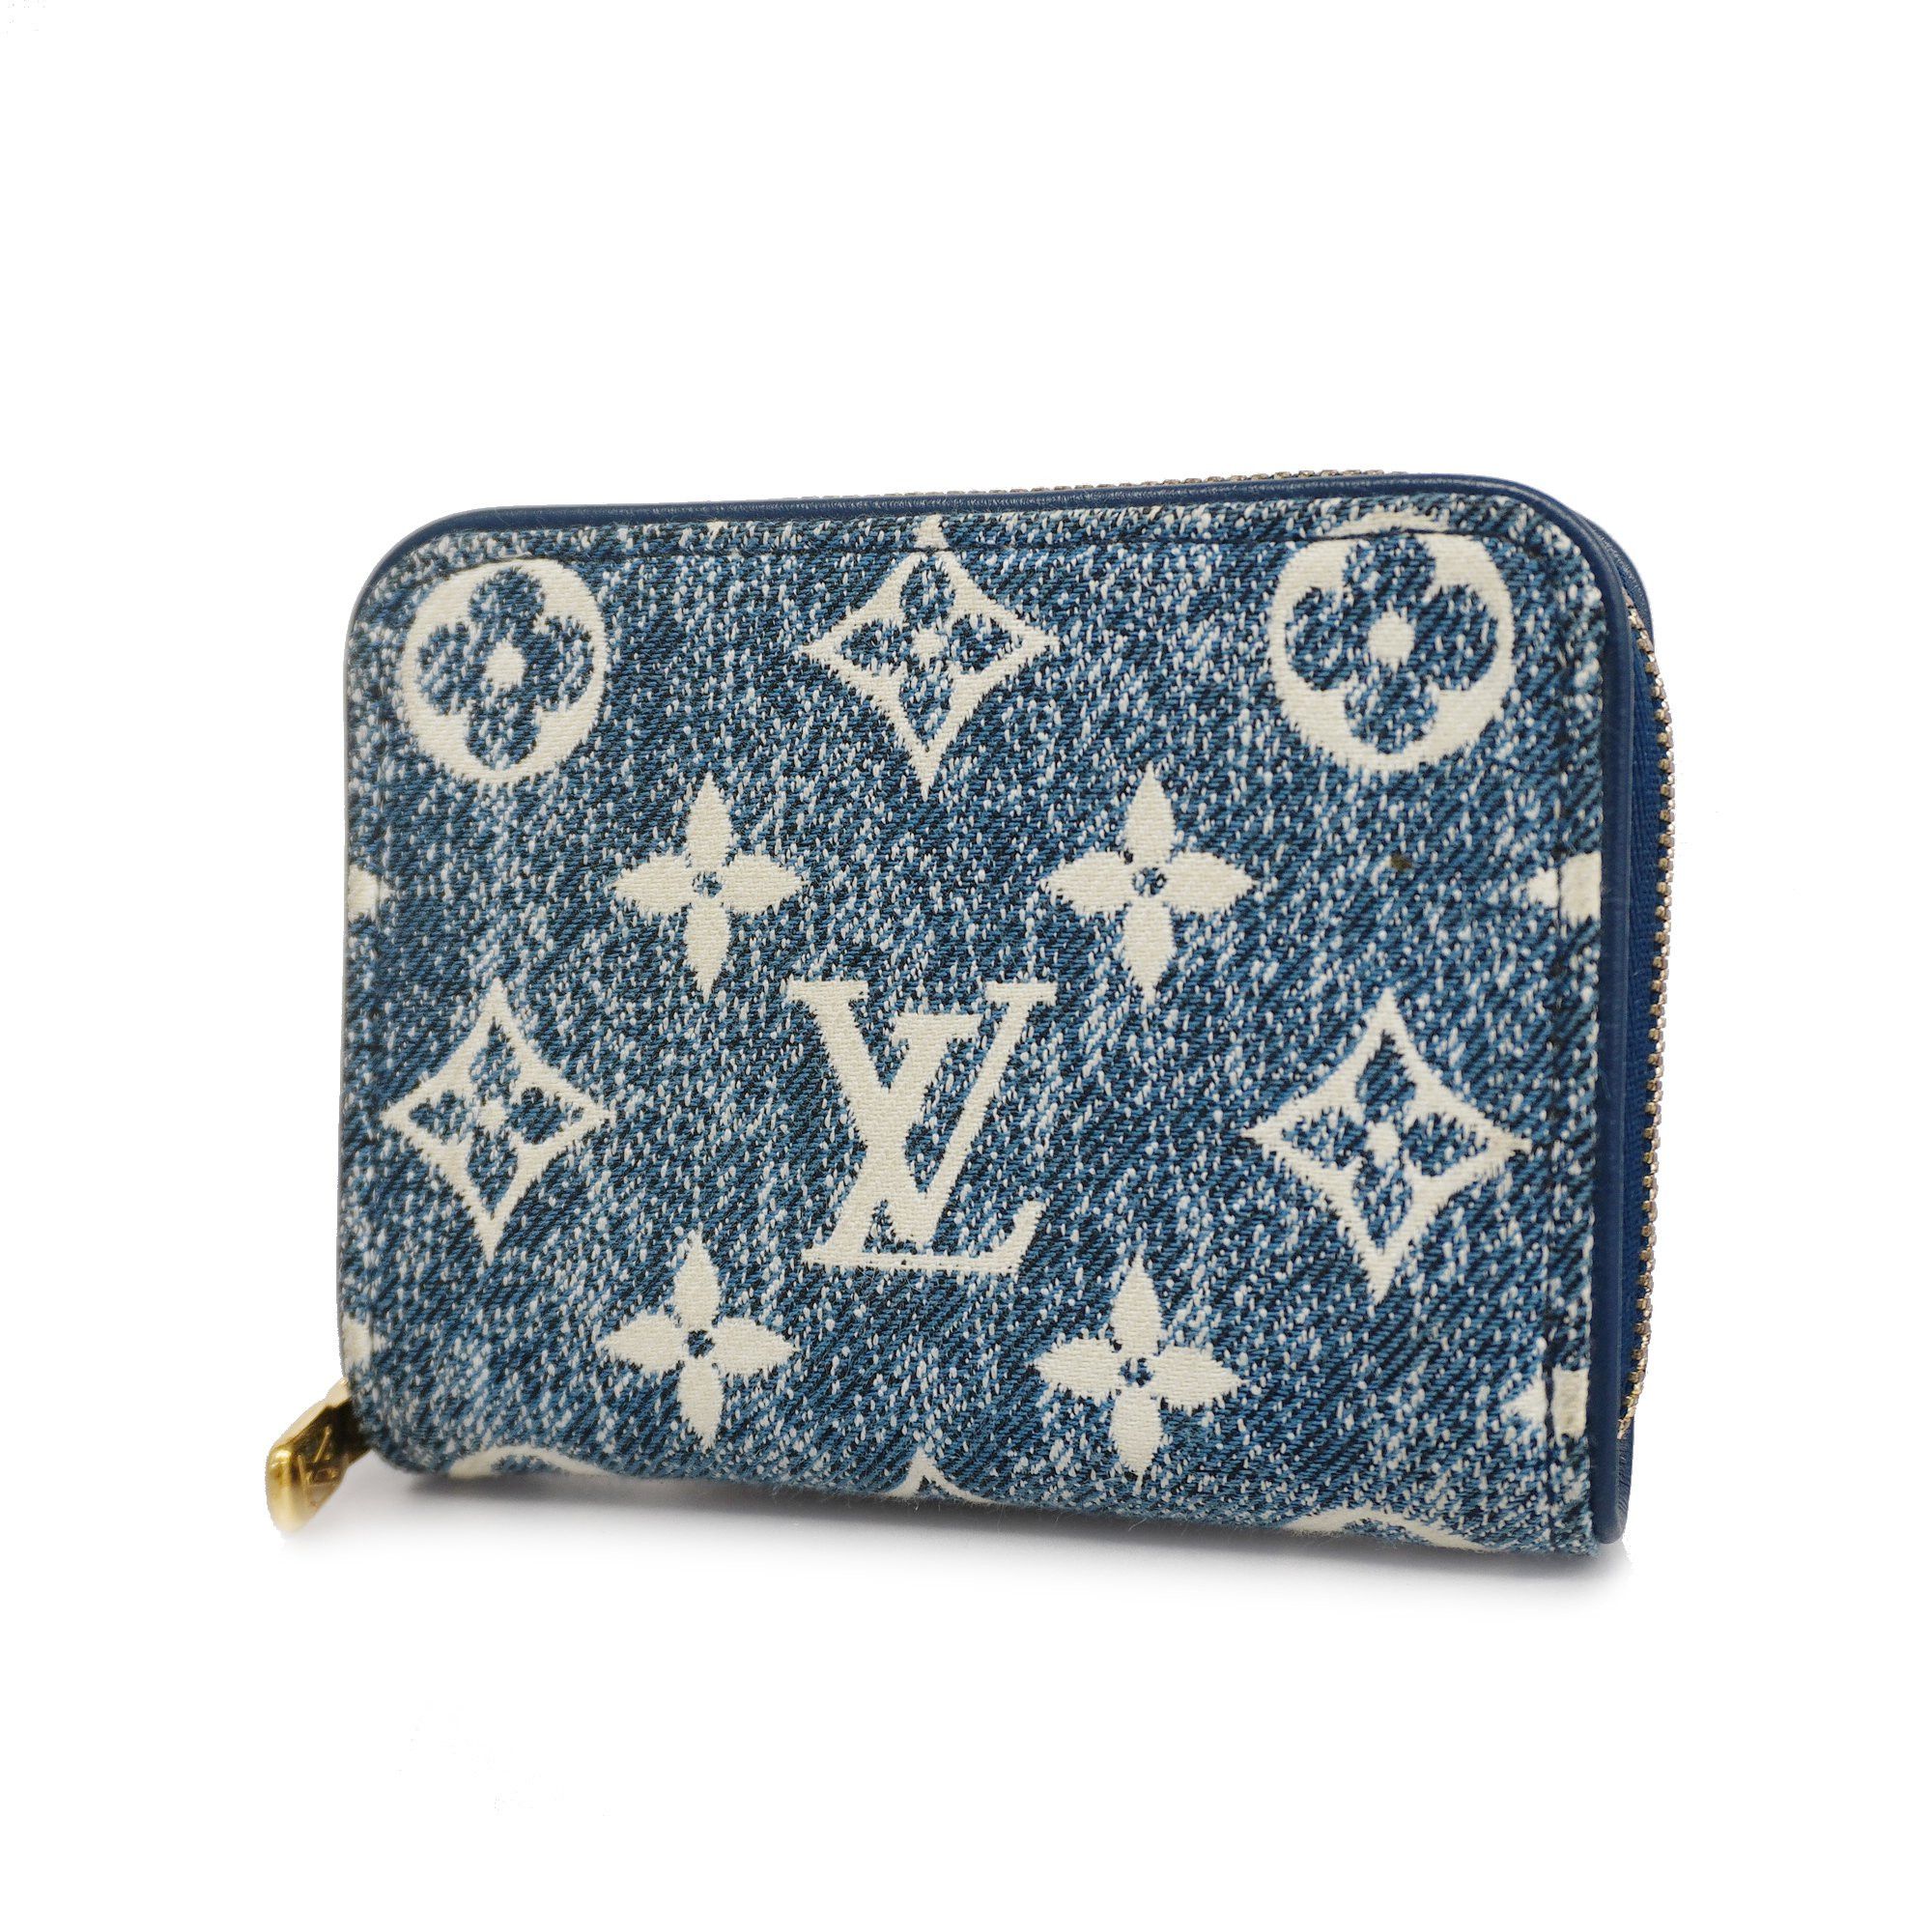 Authenticated Used LOUIS VUITTON Louis Vuitton Monogram Jacquard Since1854  Portefeuille Victorine Trifold Wallet M80211 